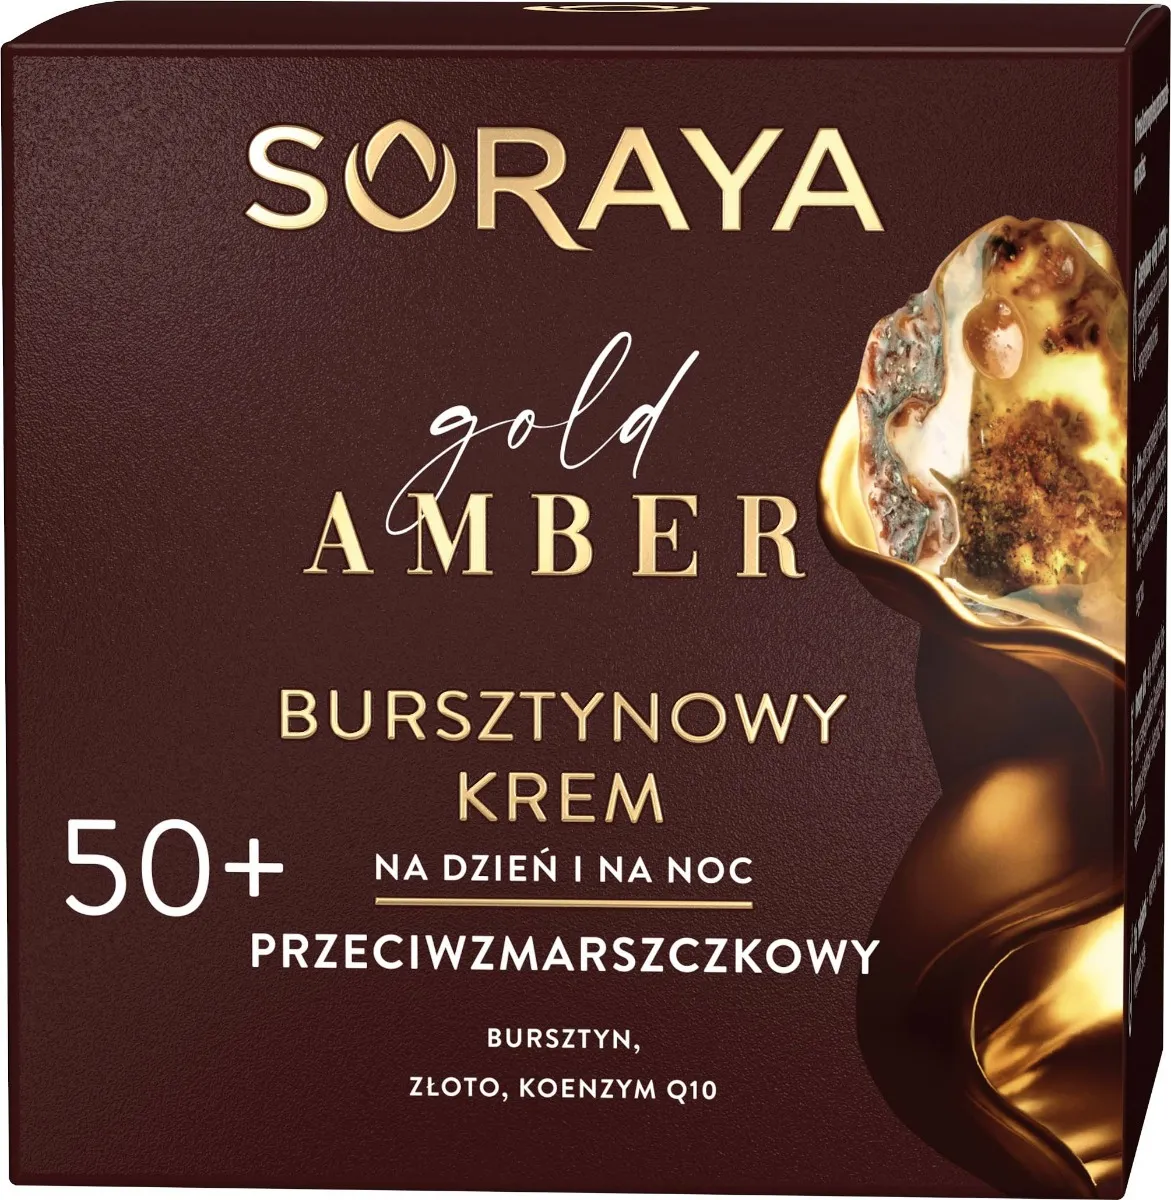 Soraya Gold Amber bursztynowy krem przeciwzmarszczkowy na dzień i na noc 50+, 50 ml